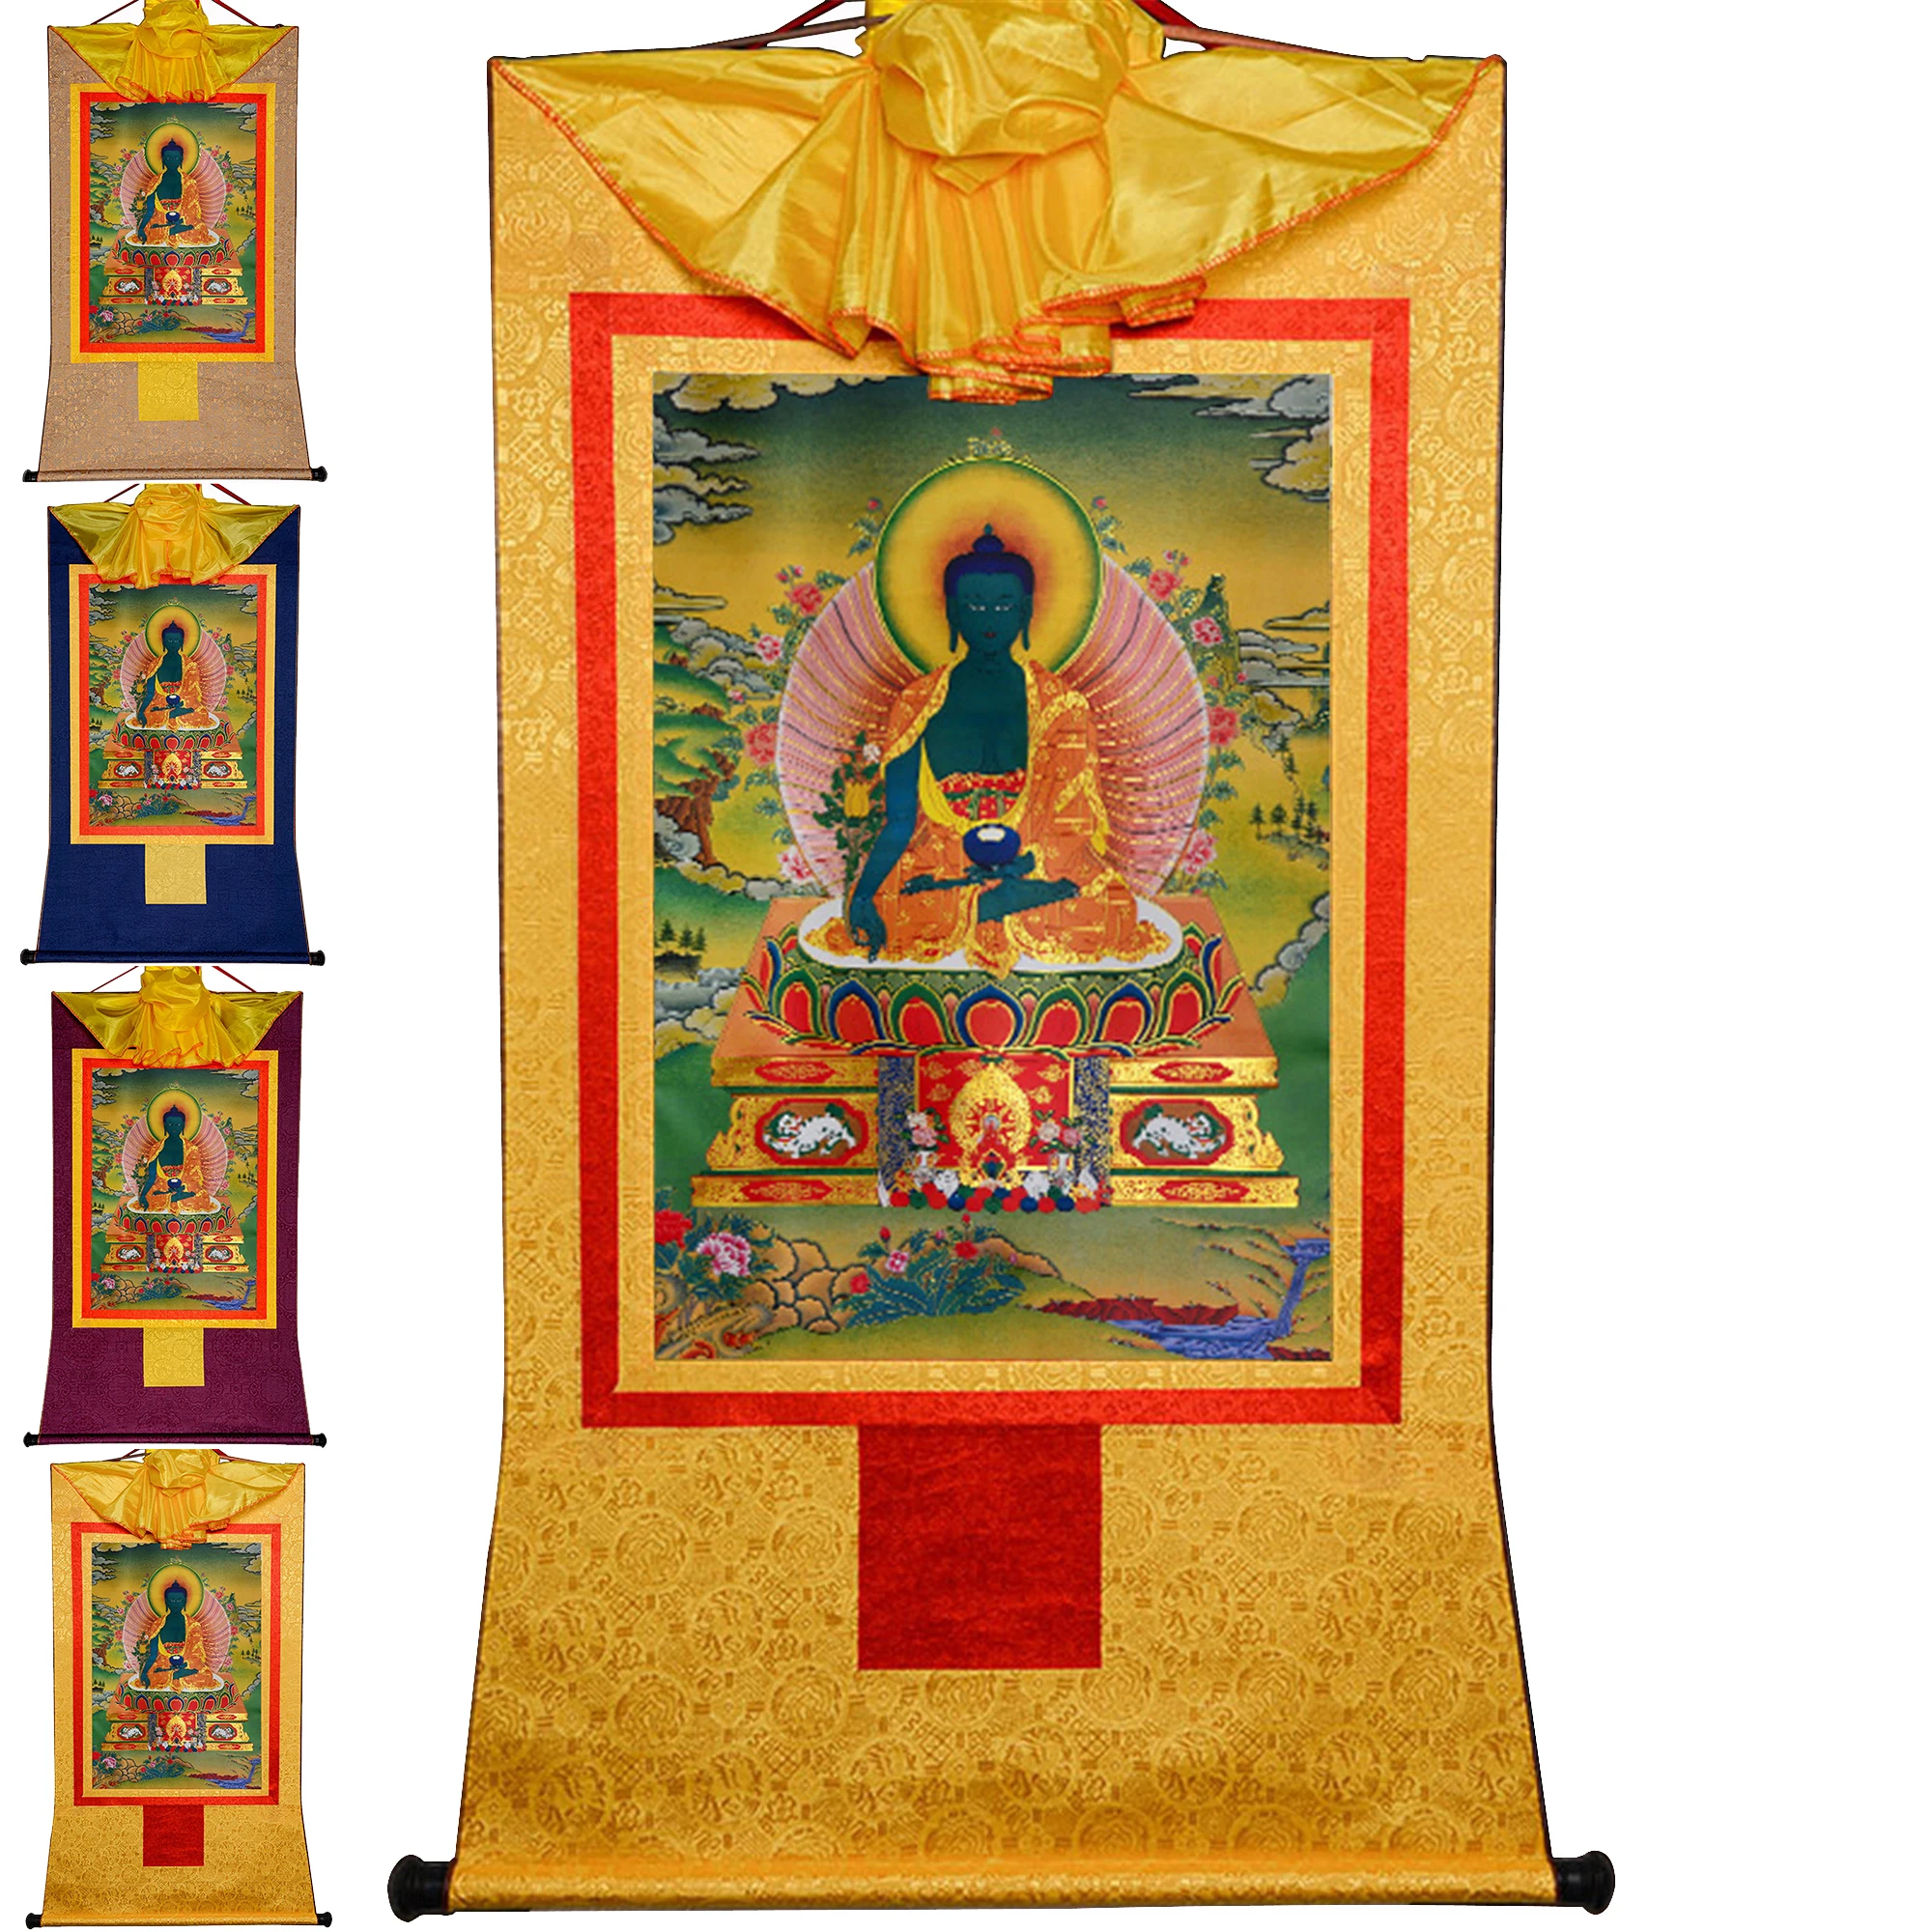 

Gandhanra Handmade Tibetan Thangka Painting Art,Bhaisajyaguru,Medicine Buddha,Buddhist Thangka Tapestry Wall Art with Scroll